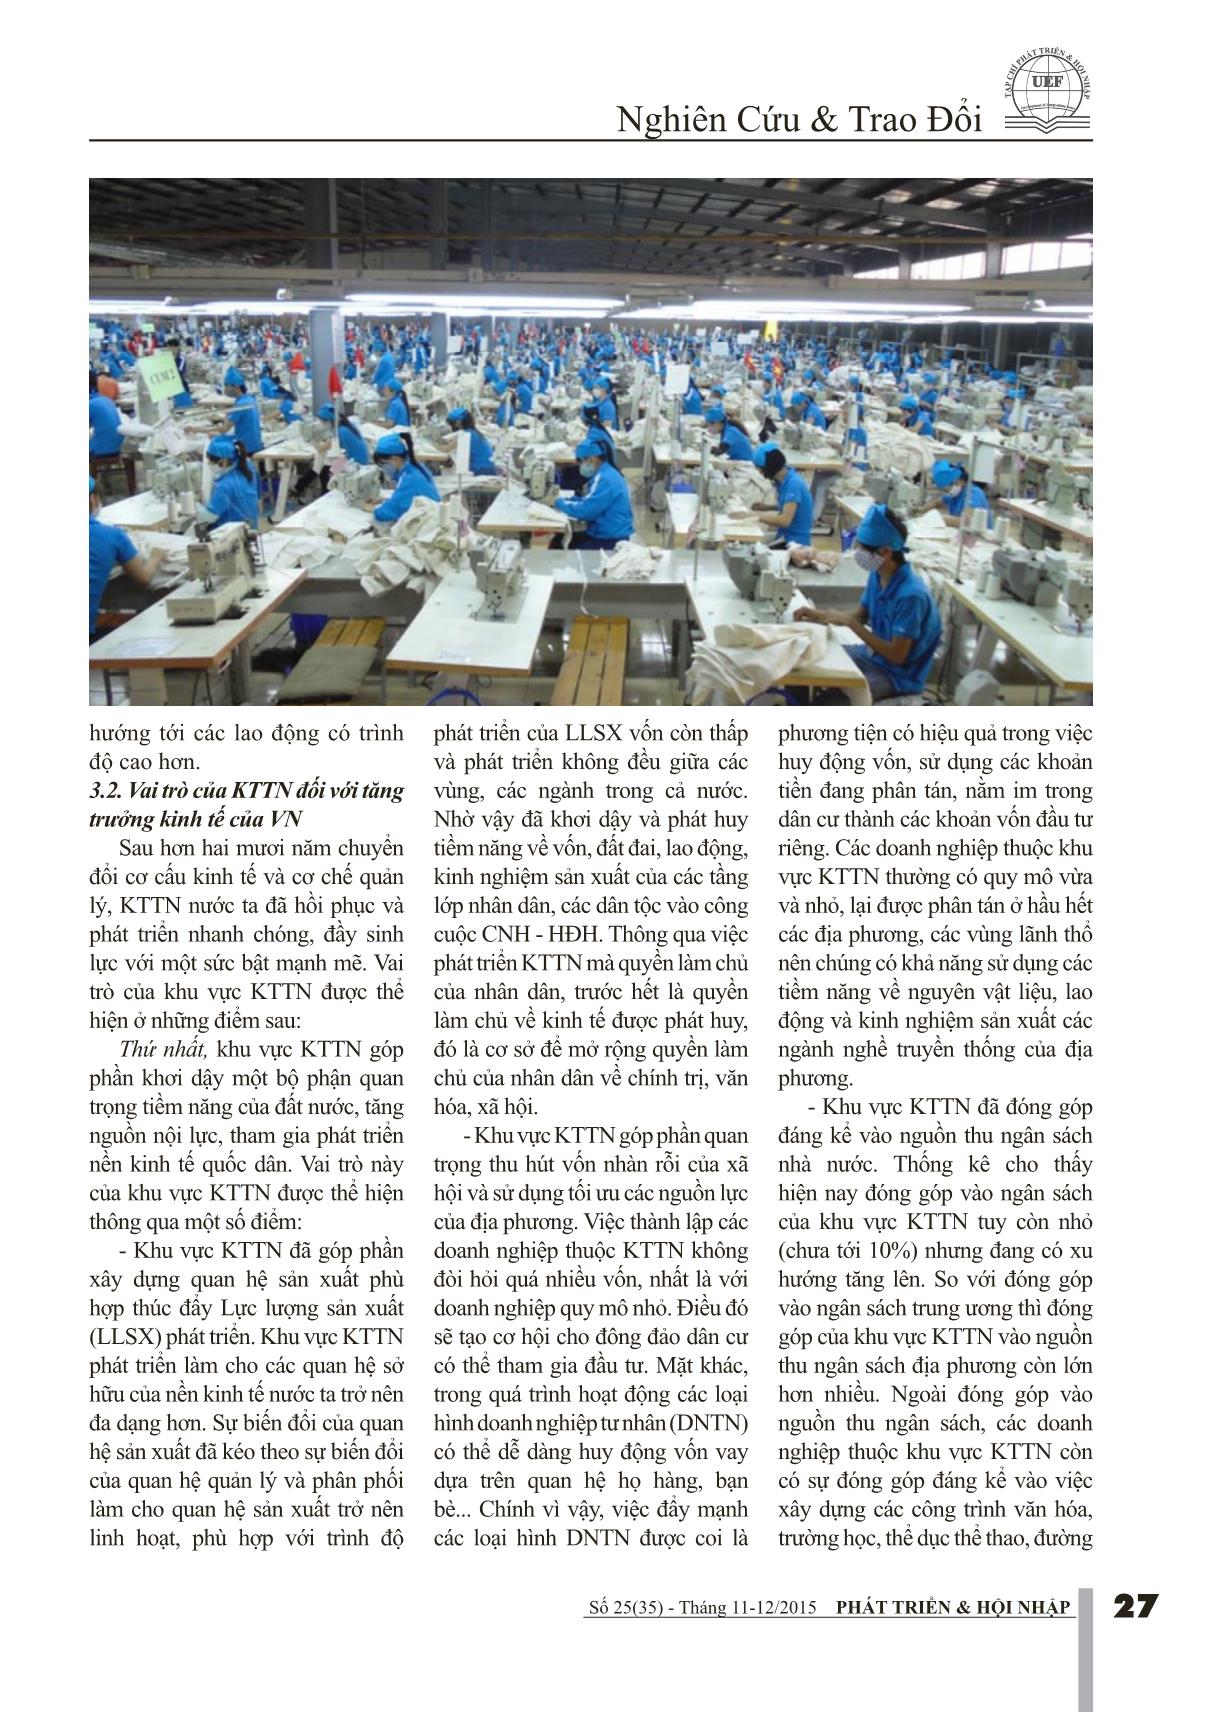 Vai trò của kinh tế tư nhân với tăng trưởng kinh tế của Việt Nam trang 4